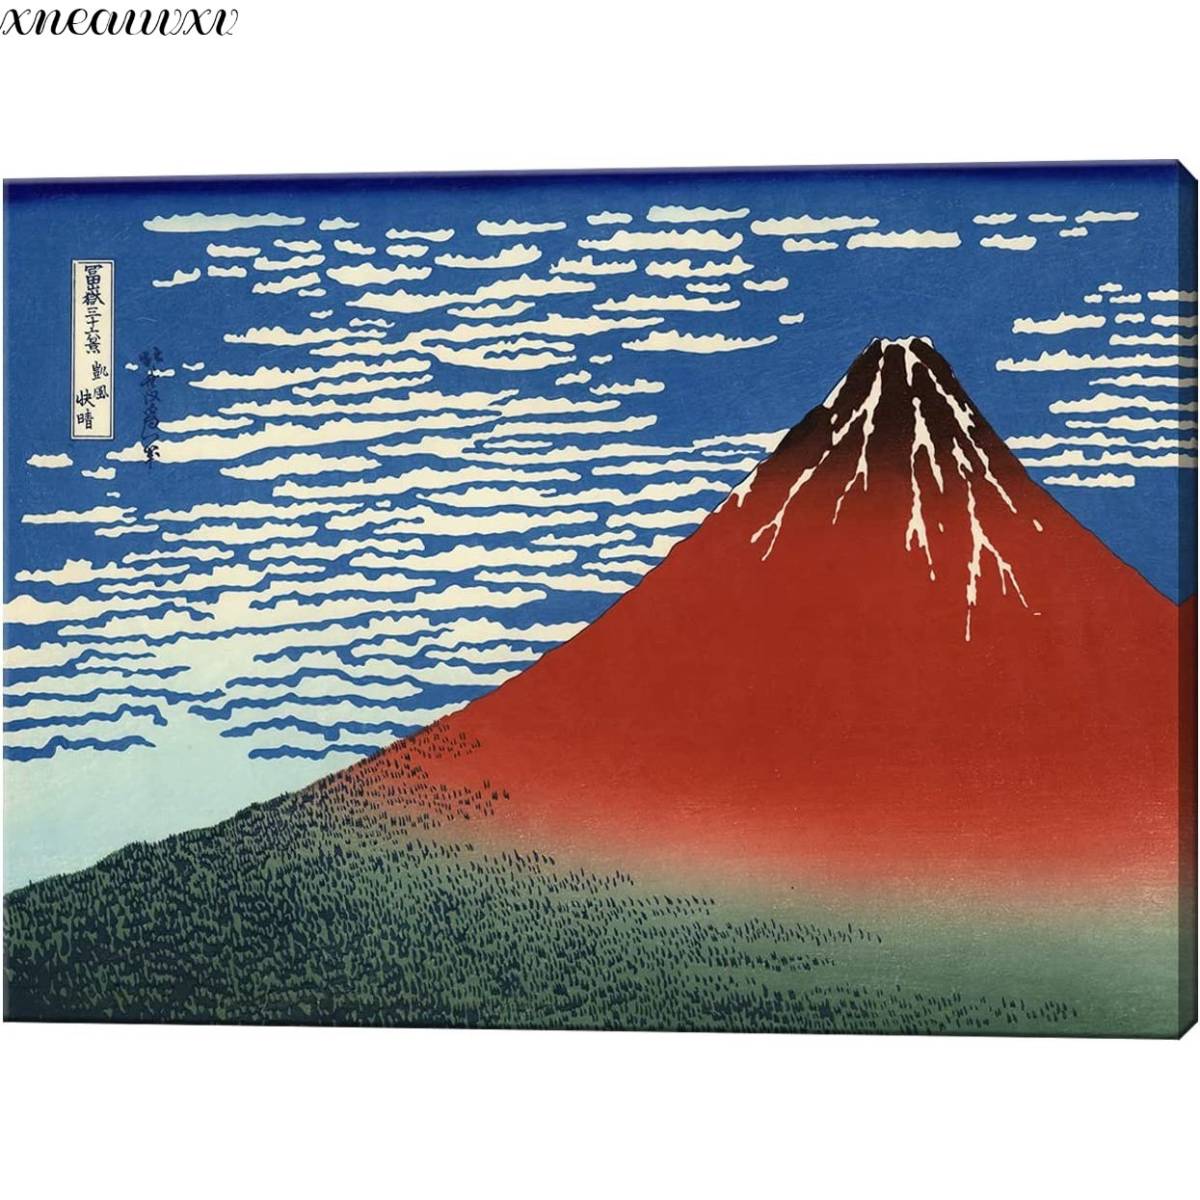 Panel de arte de Katsushika Hokusai Treinta y seis vistas del monte Fuji Viento claro y soleado Reproducción Vista espectacular Arte Decoración japonesa Paisaje natural clásico Pintura marina Arte interior, cuadro, Ukiyo-e, imprimir, foto de lugar famoso